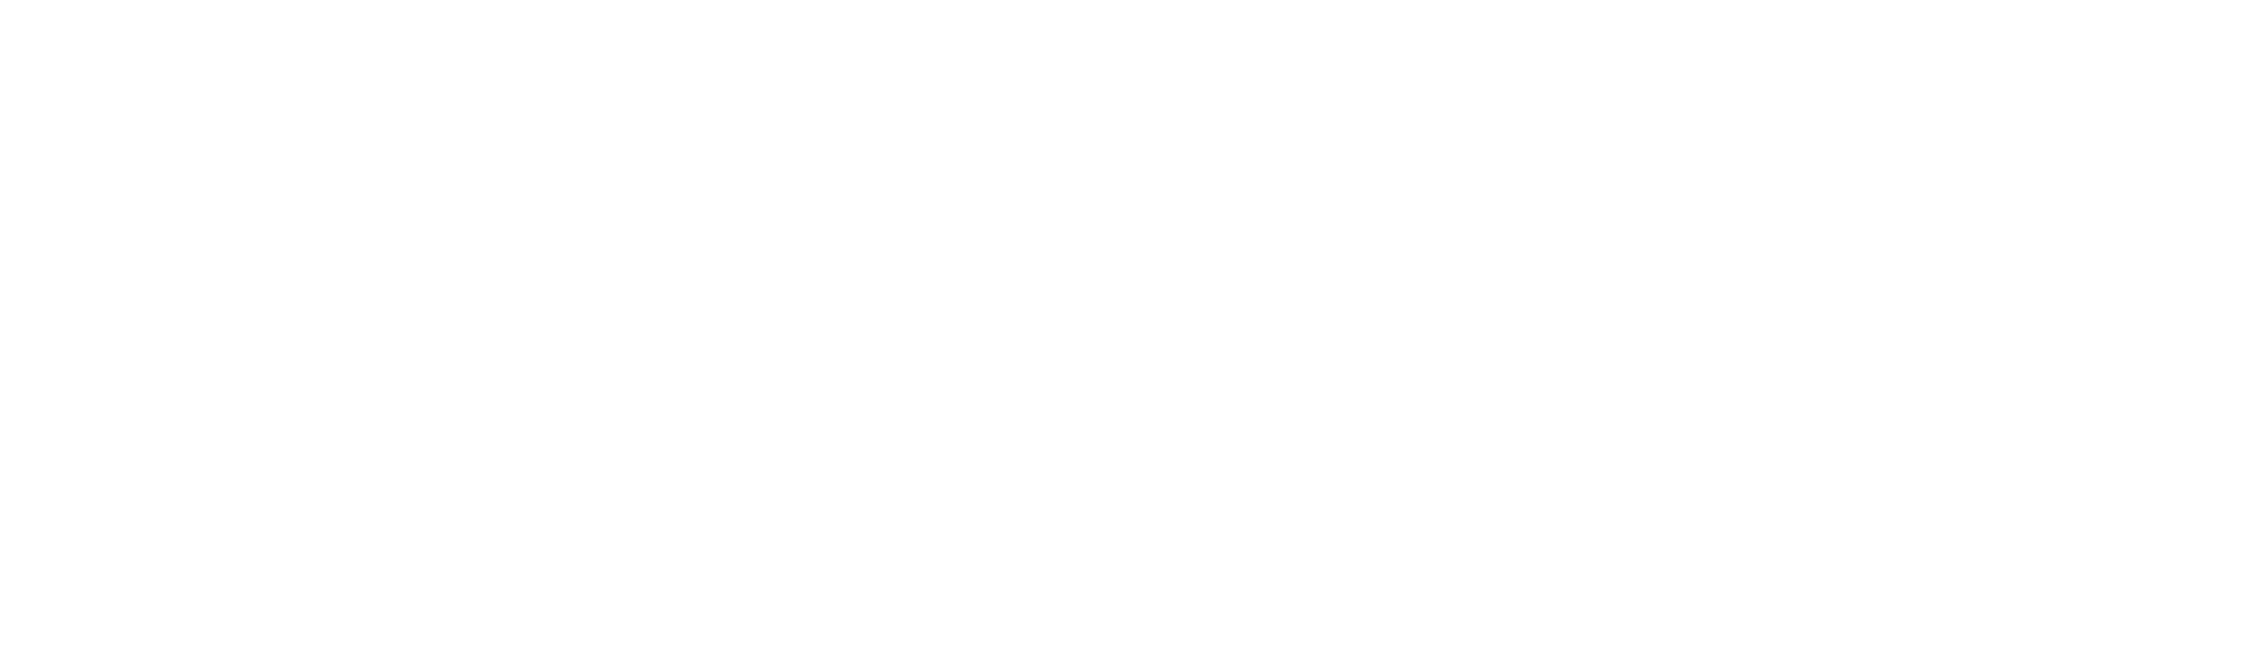 Southern Bank Logo